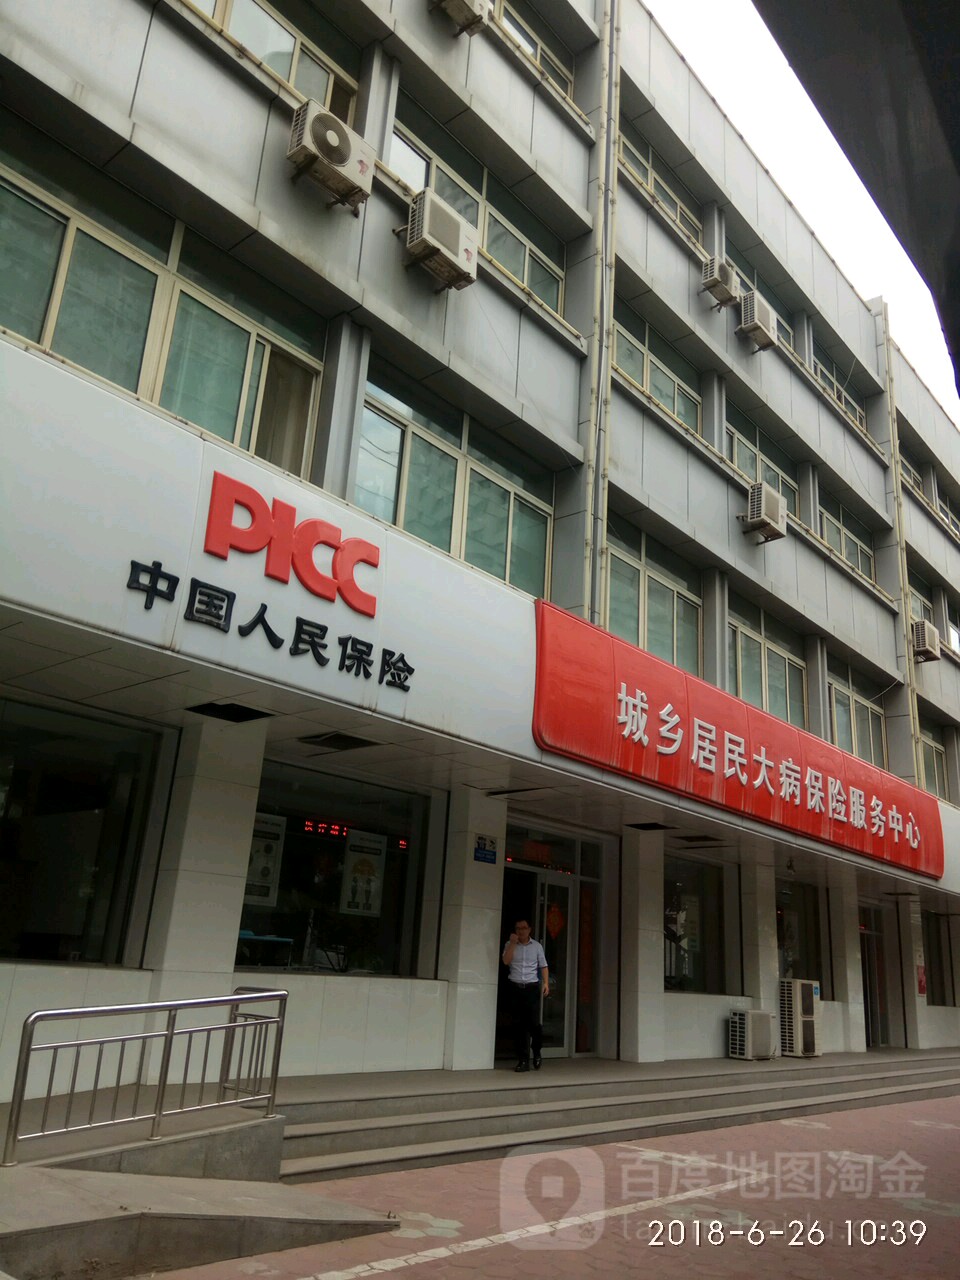 中國人民保險城鄉居民大病保險服務中心